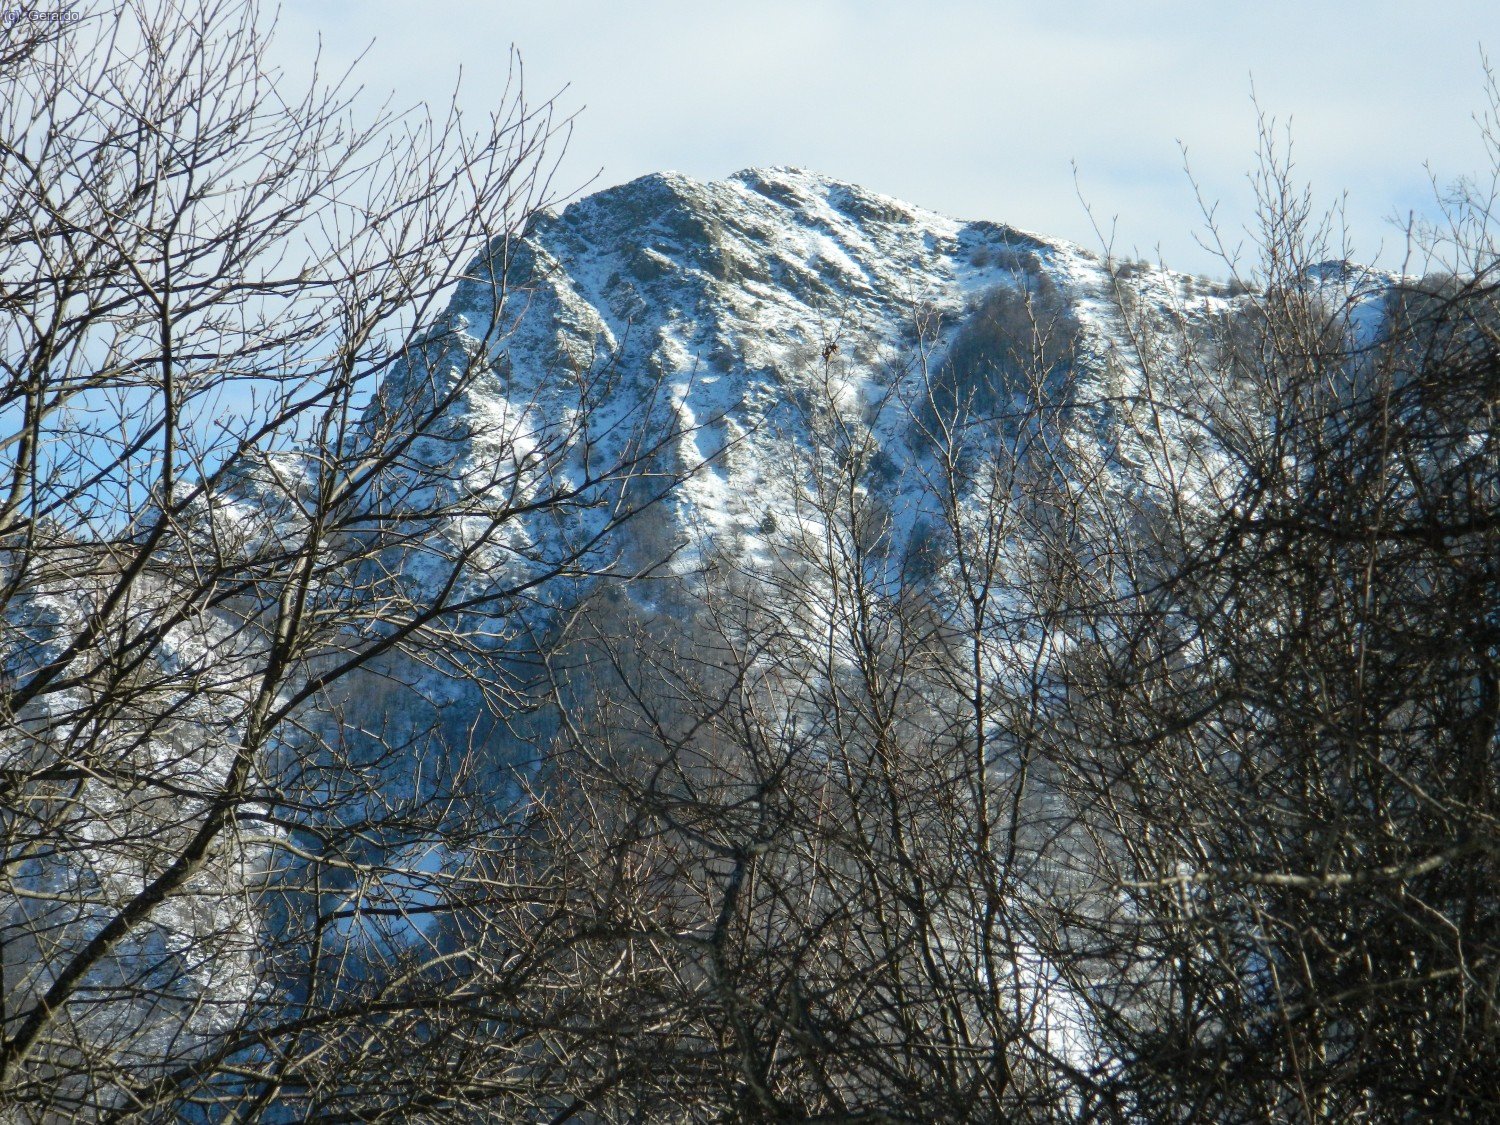 I aquí acaba el tema del dissabte 24, amb aquesta imatge alpina de Les Agudes.